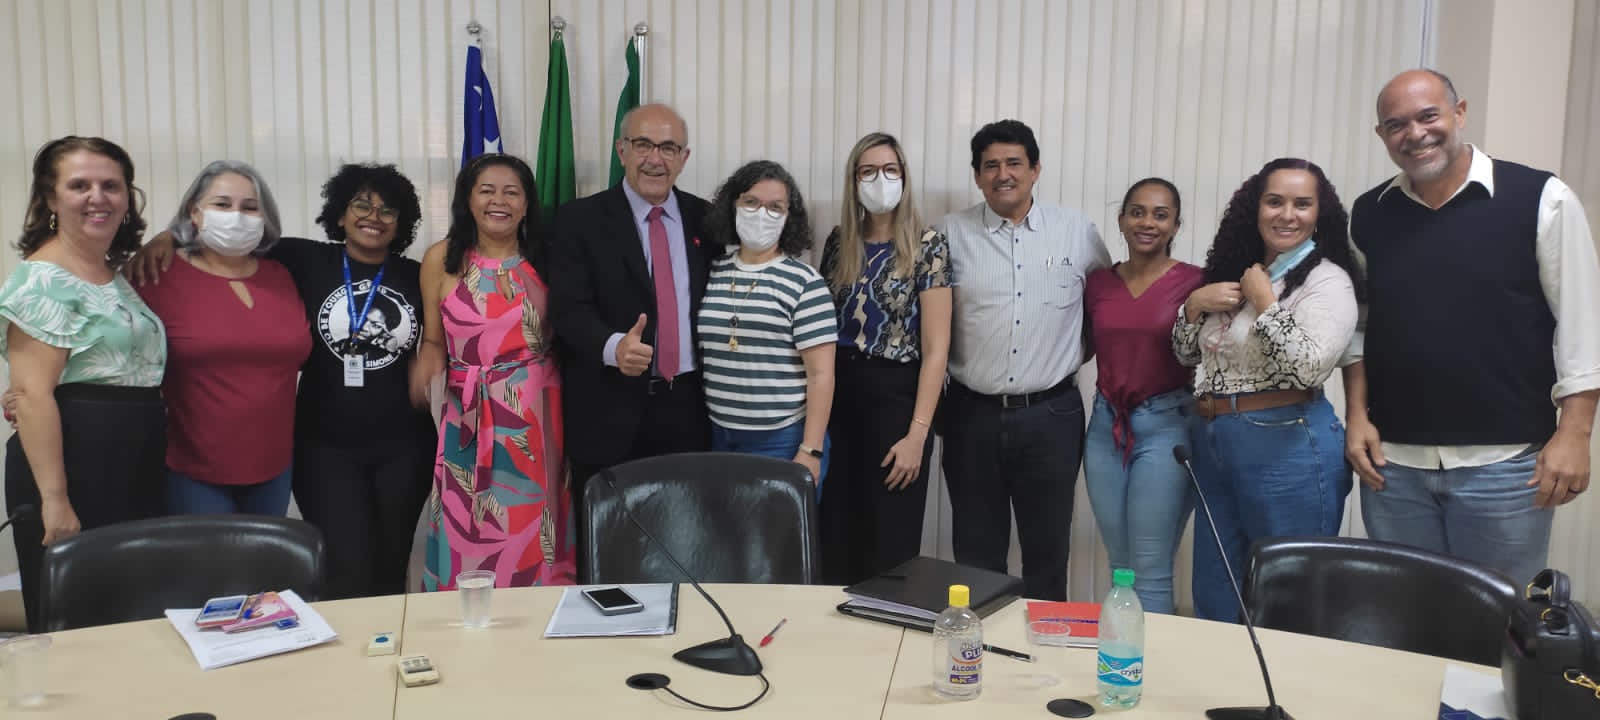 Comissão de Saúde e Assistência Social analisa condições de trabalho de assistentes sociais em Goiânia